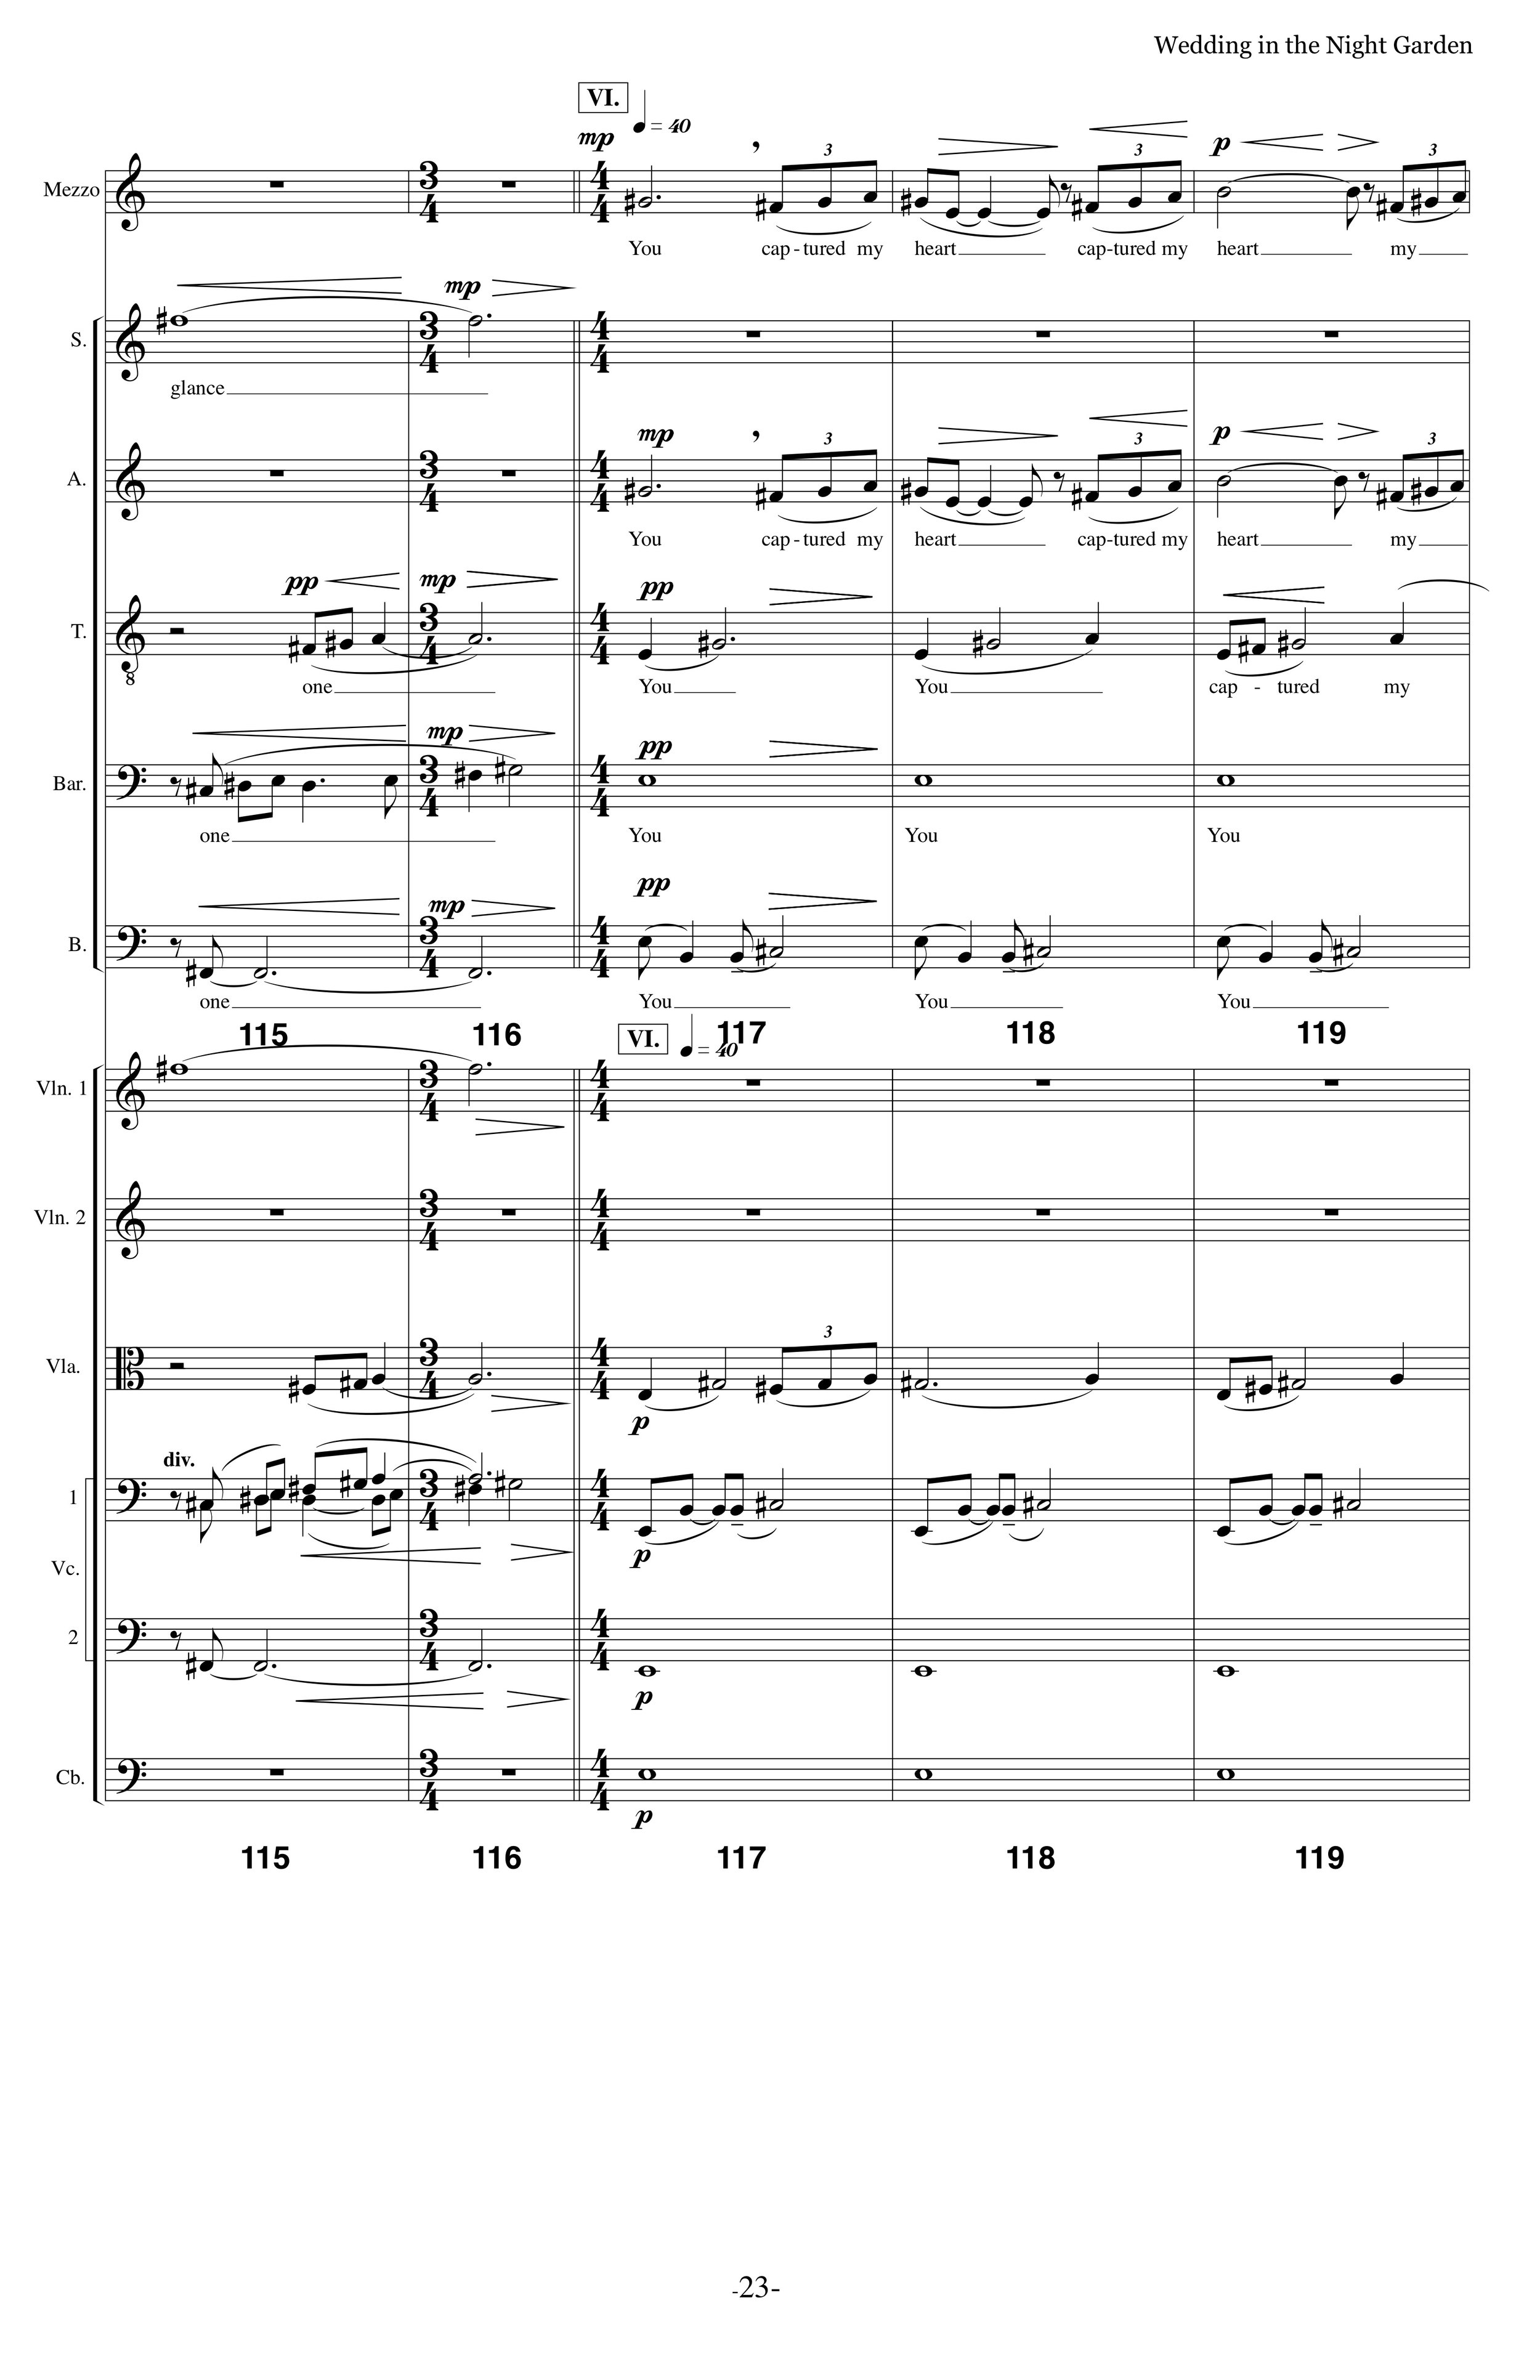 WITNG_MS Strings Choir p23.jpg